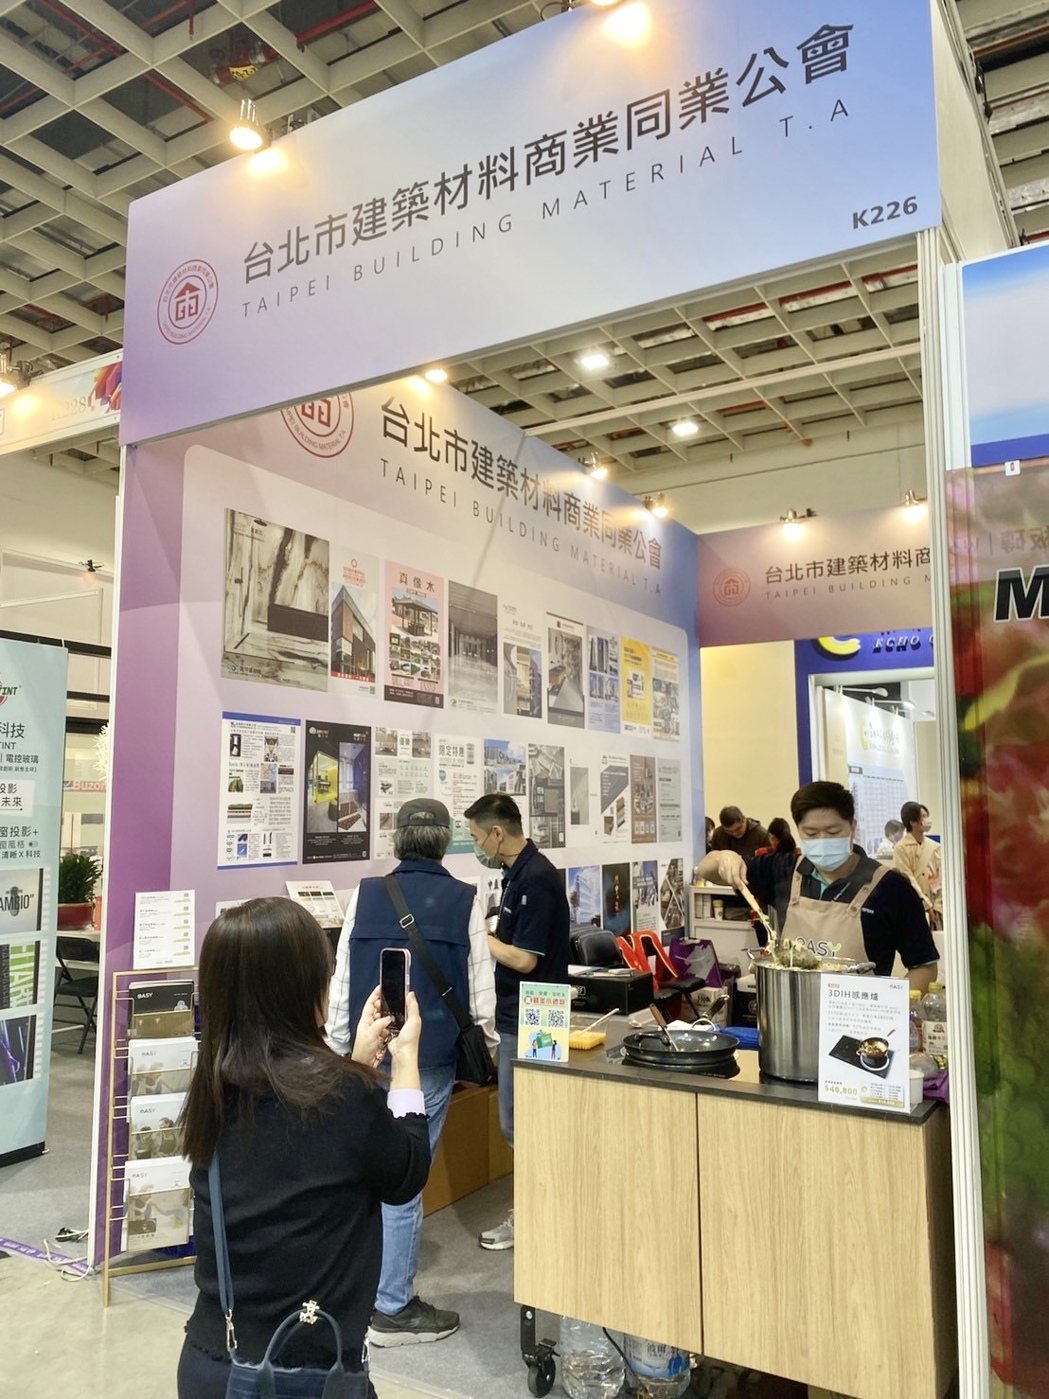 羿麗應台北市建築材料公會邀請，參加第35屆台北國際建築建材暨產品展。羿麗提供